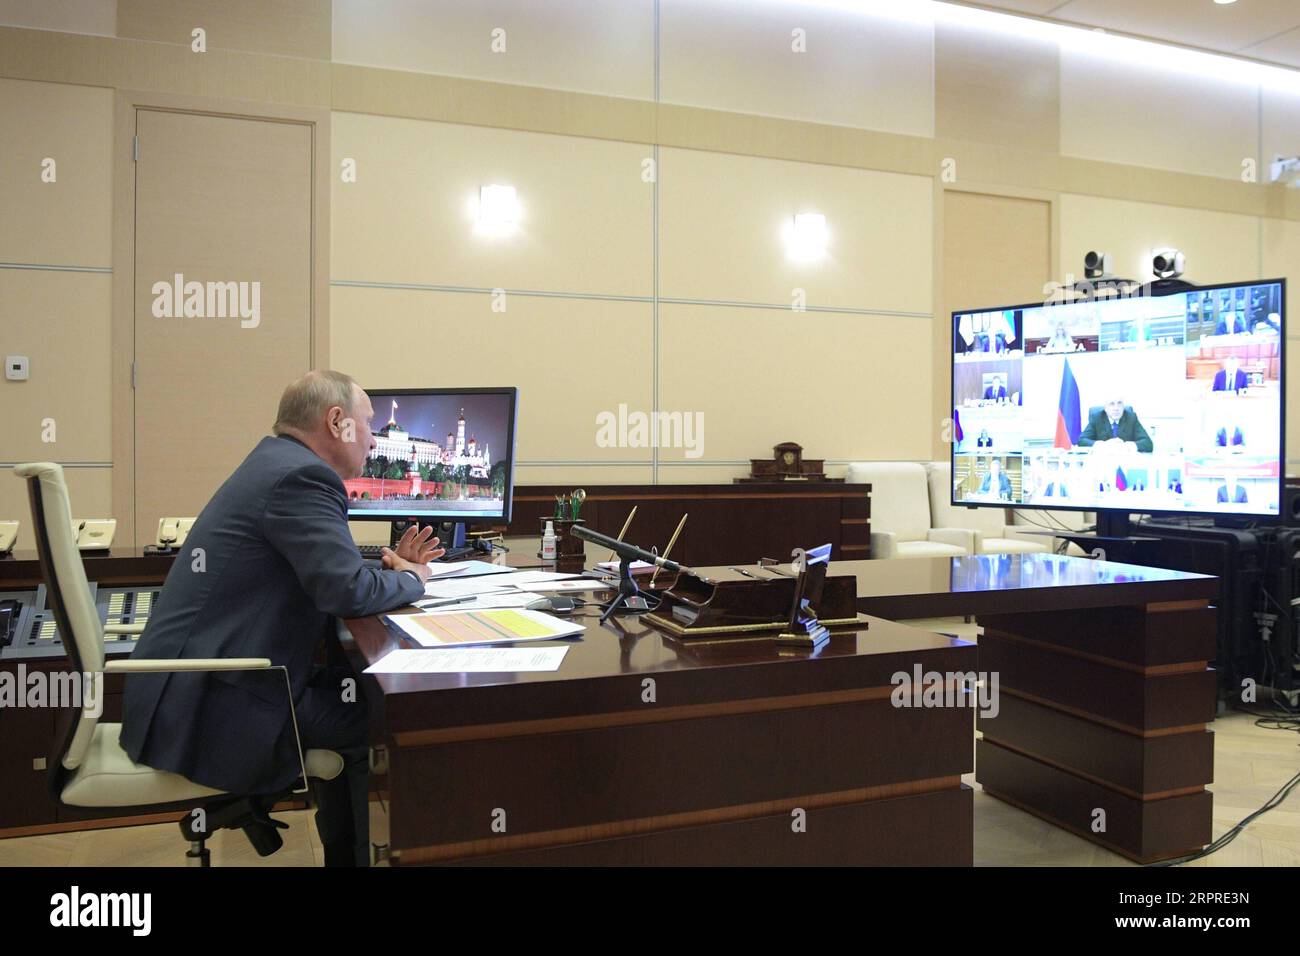 200402 -- MOSCA, 2 aprile 2020 Xinhua -- il presidente russo Vladimir Putin tiene una videoconferenza con i membri del governo russo nella residenza Novo-Ogarevo, fuori Mosca, Russia, 1 aprile 2020. Sputnik/Handout via Xinhua RUSSIA-MOSCA-PUTIN-VIDEO CONFERENZA PUBLICATIONxNOTxINxCHN Foto Stock